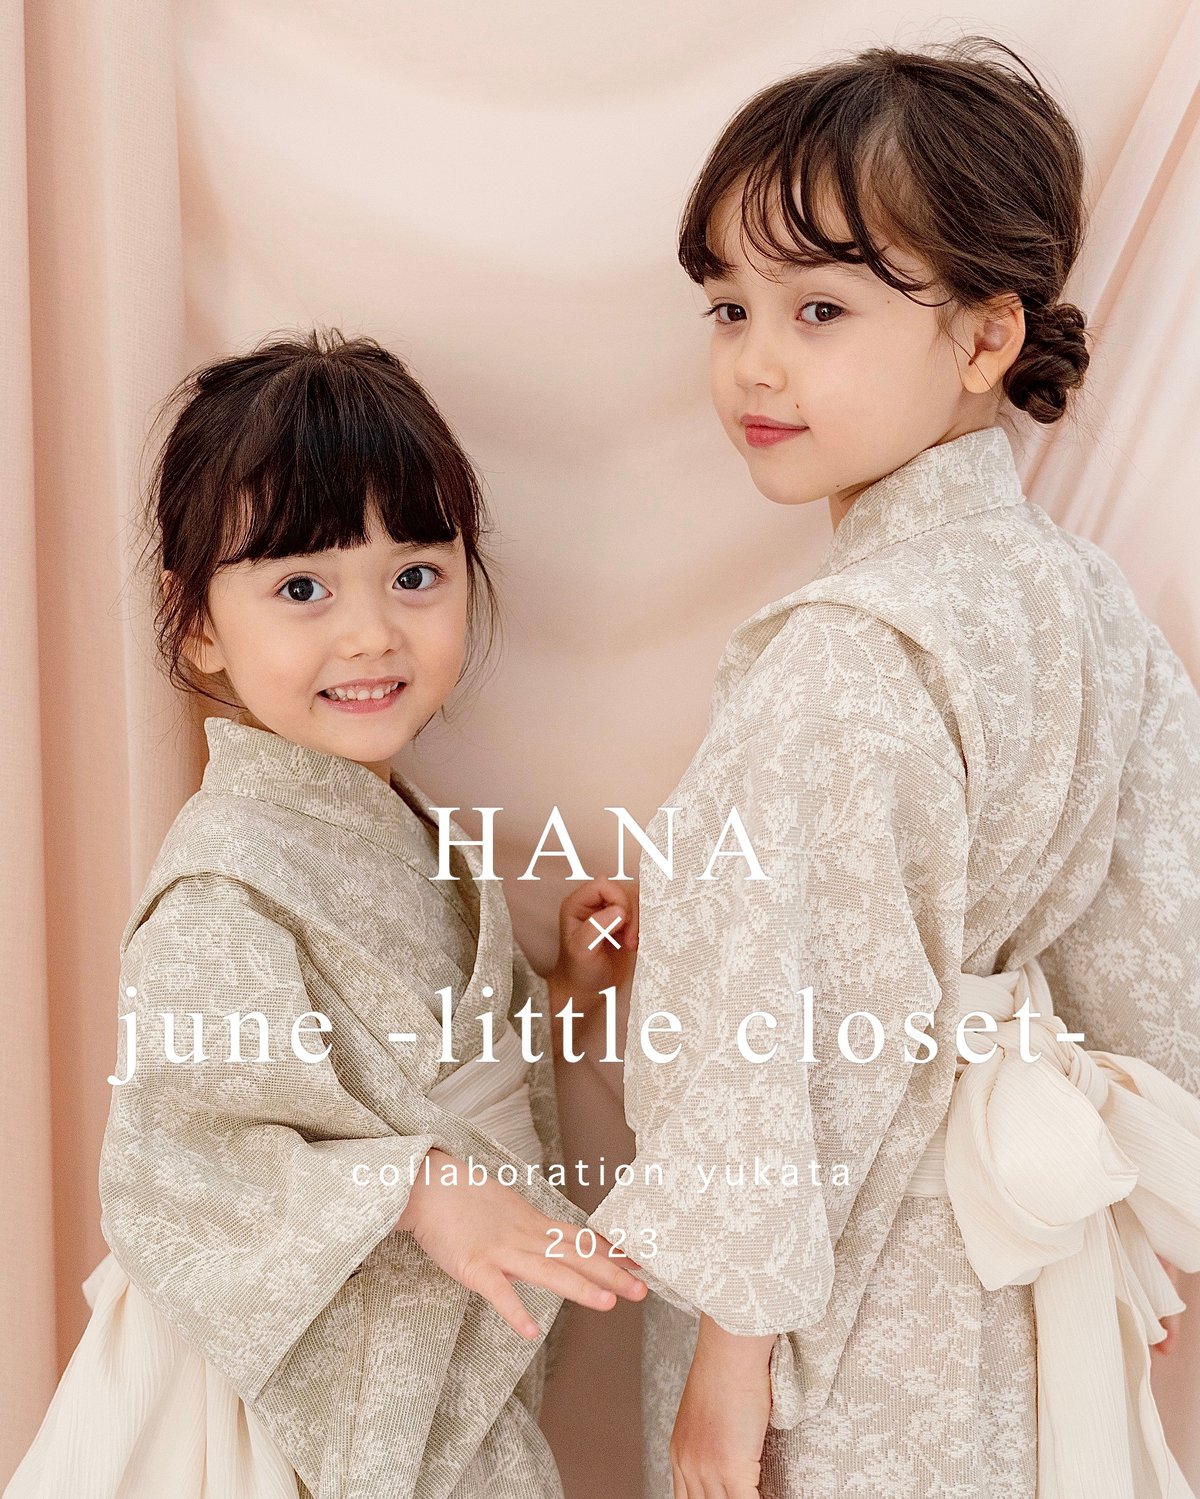 june littlecloset × hana コラボ浴衣